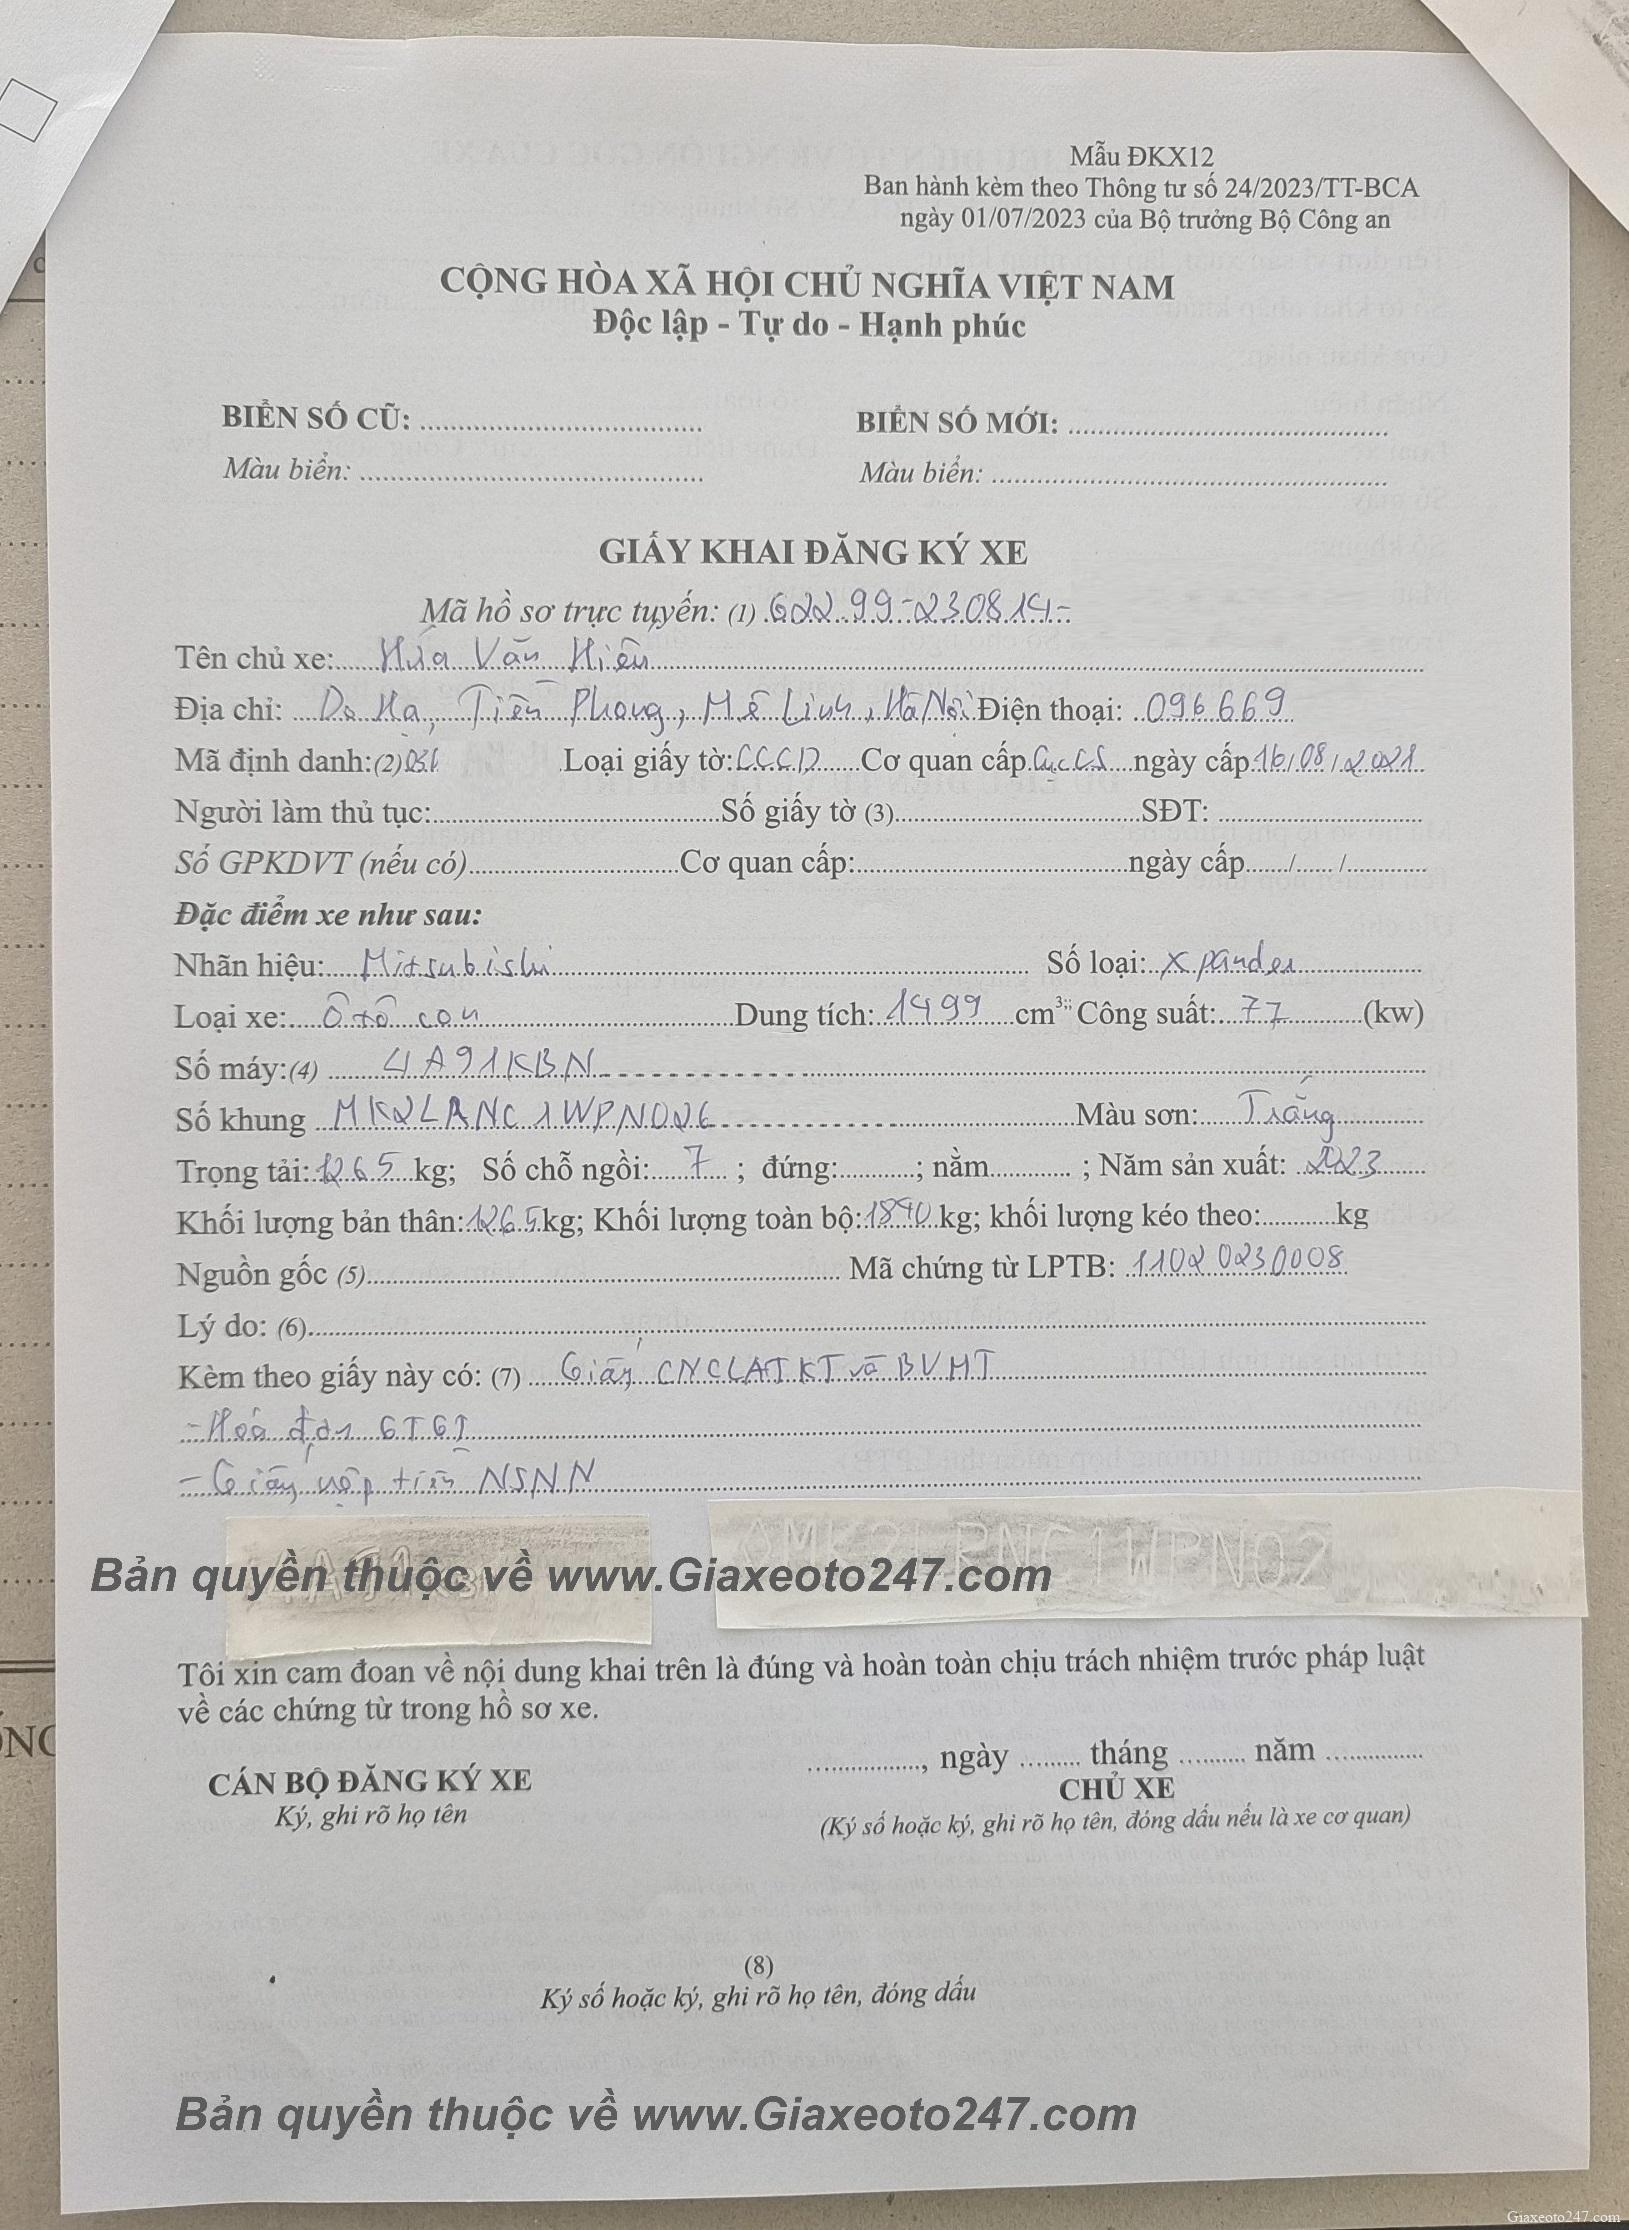 Huong dan ghi to khai dang ky xe o to xe may DKX12 - Hướng dẫn ghi giấy khai đăng ký ô tô, xe máy